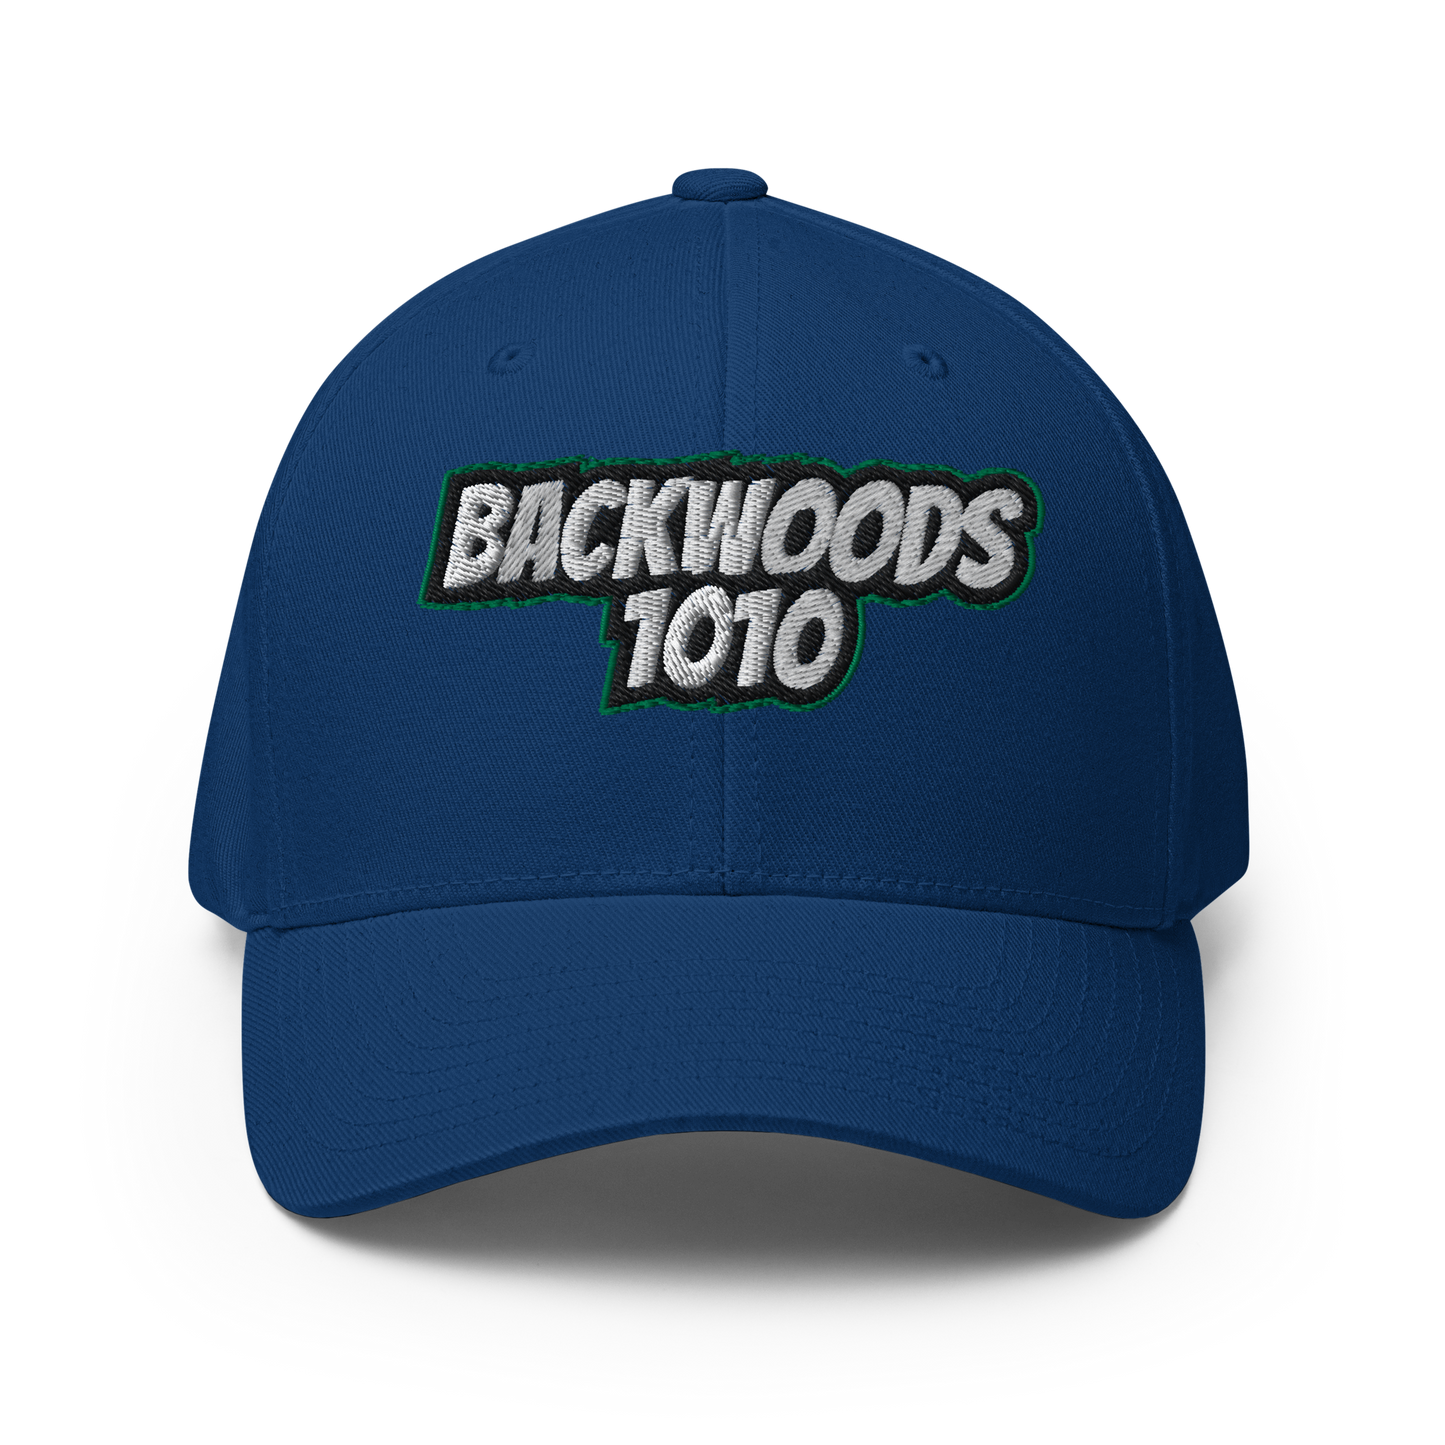 Backwoods1010 Flex Fit Hat